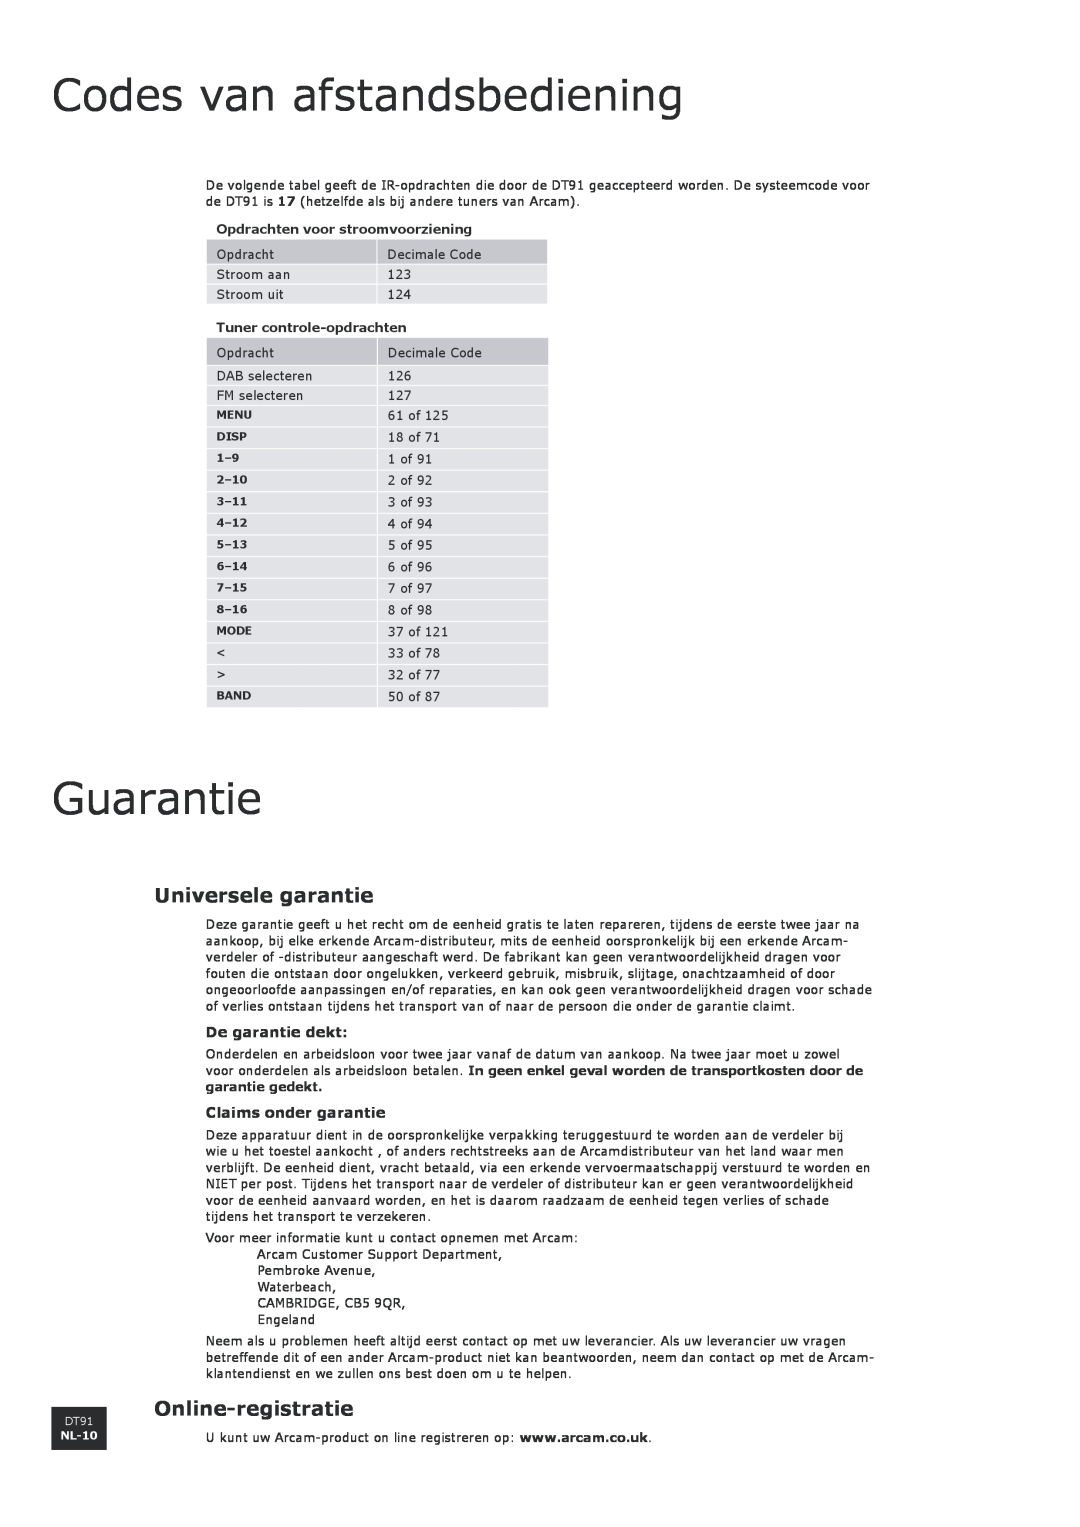 Arcam DT91 manual Codes van afstandsbediening, Guarantie, Universele garantie, Online-registratie, De garantie dekt 